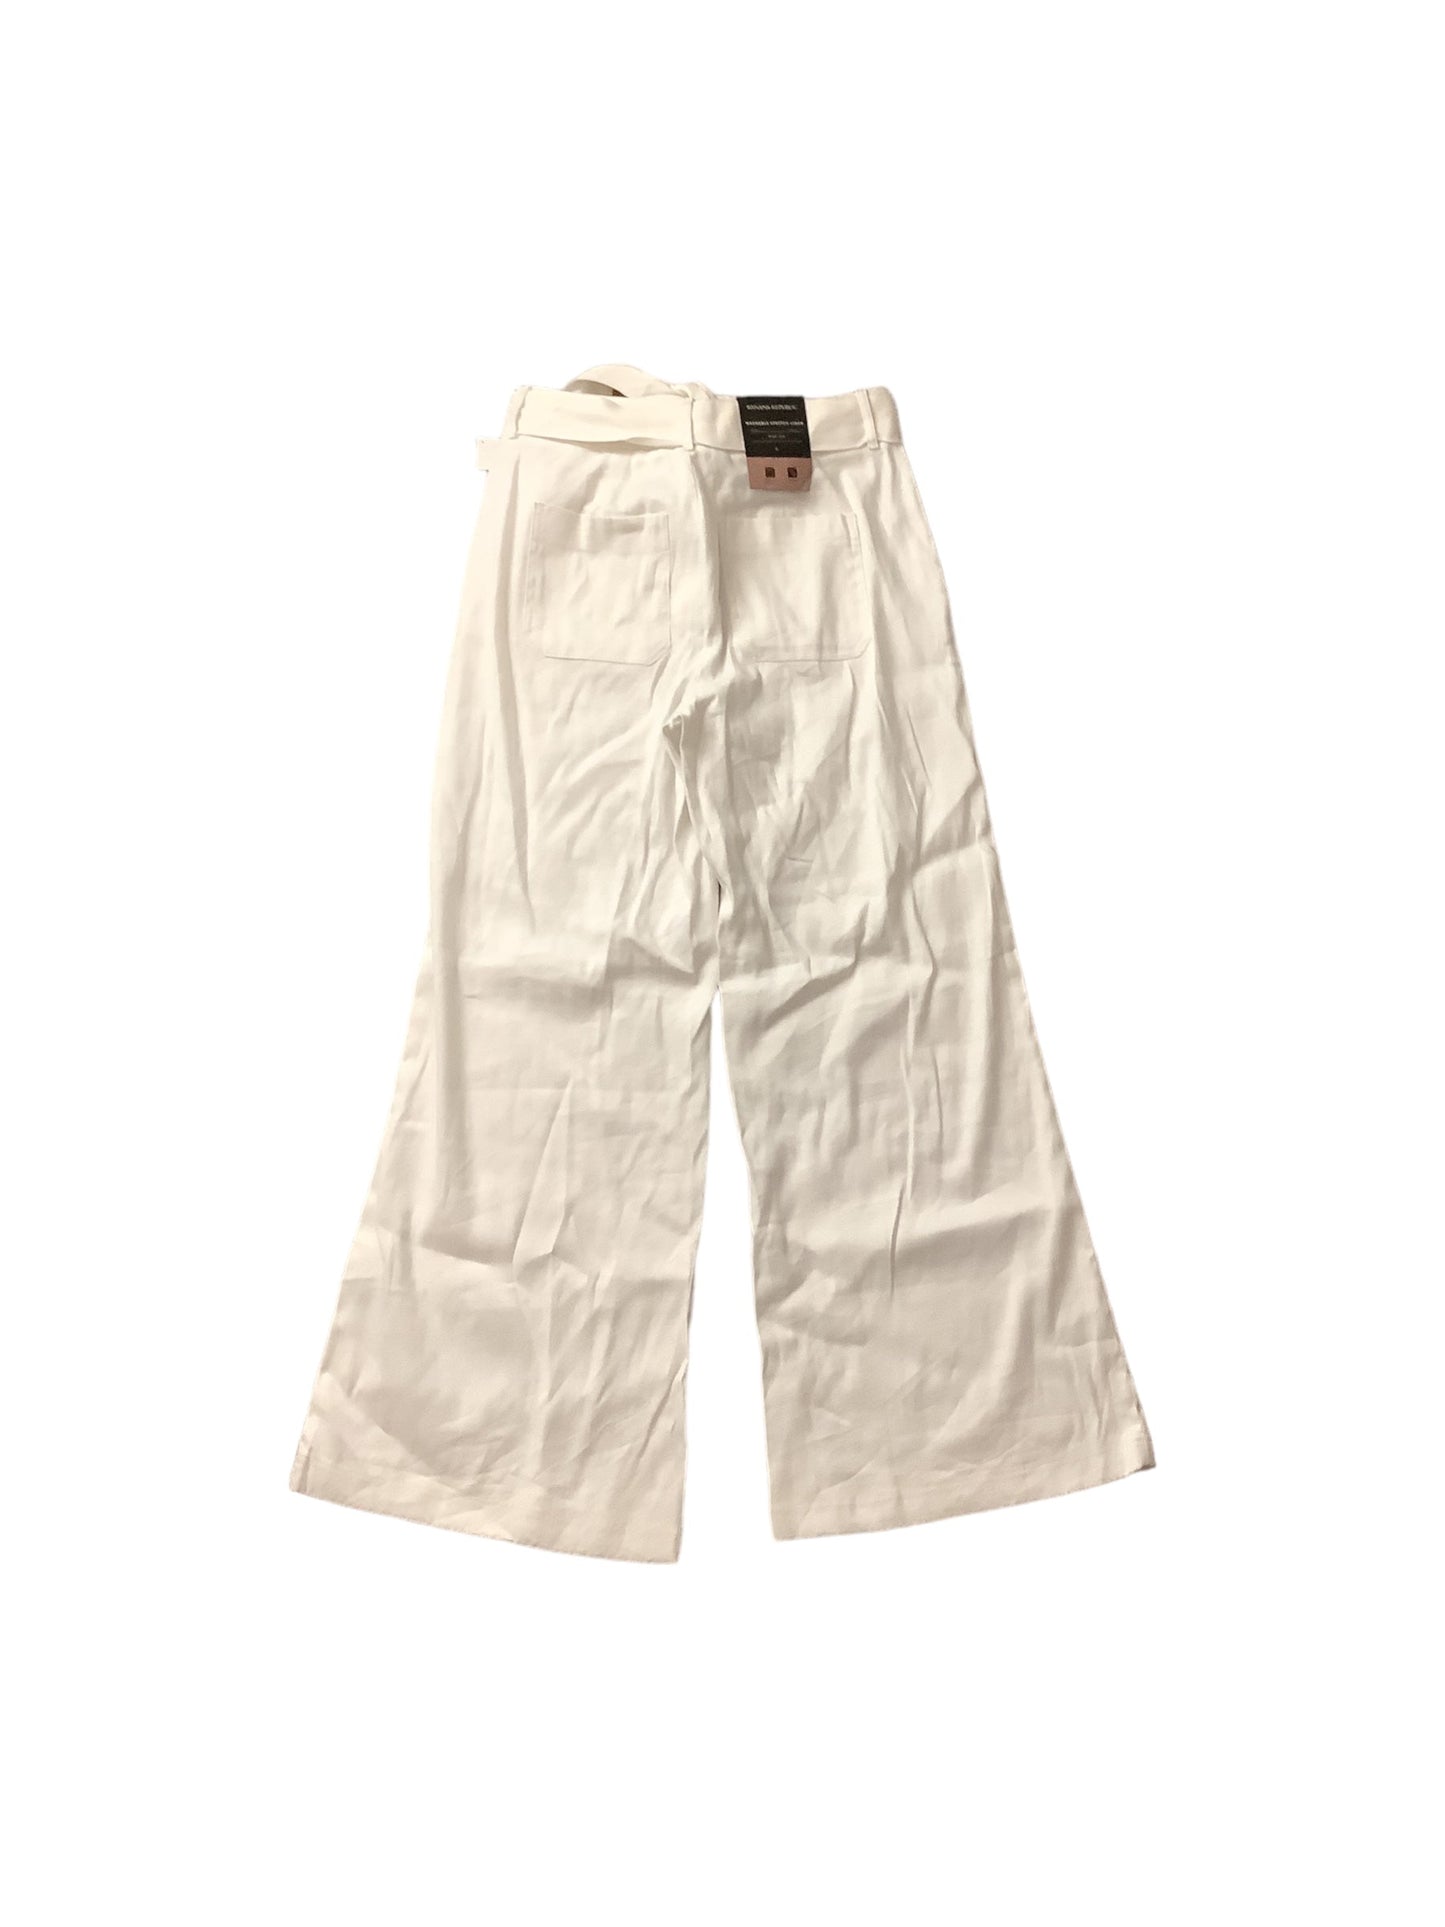 White Pants Linen Banana Republic, Size 6